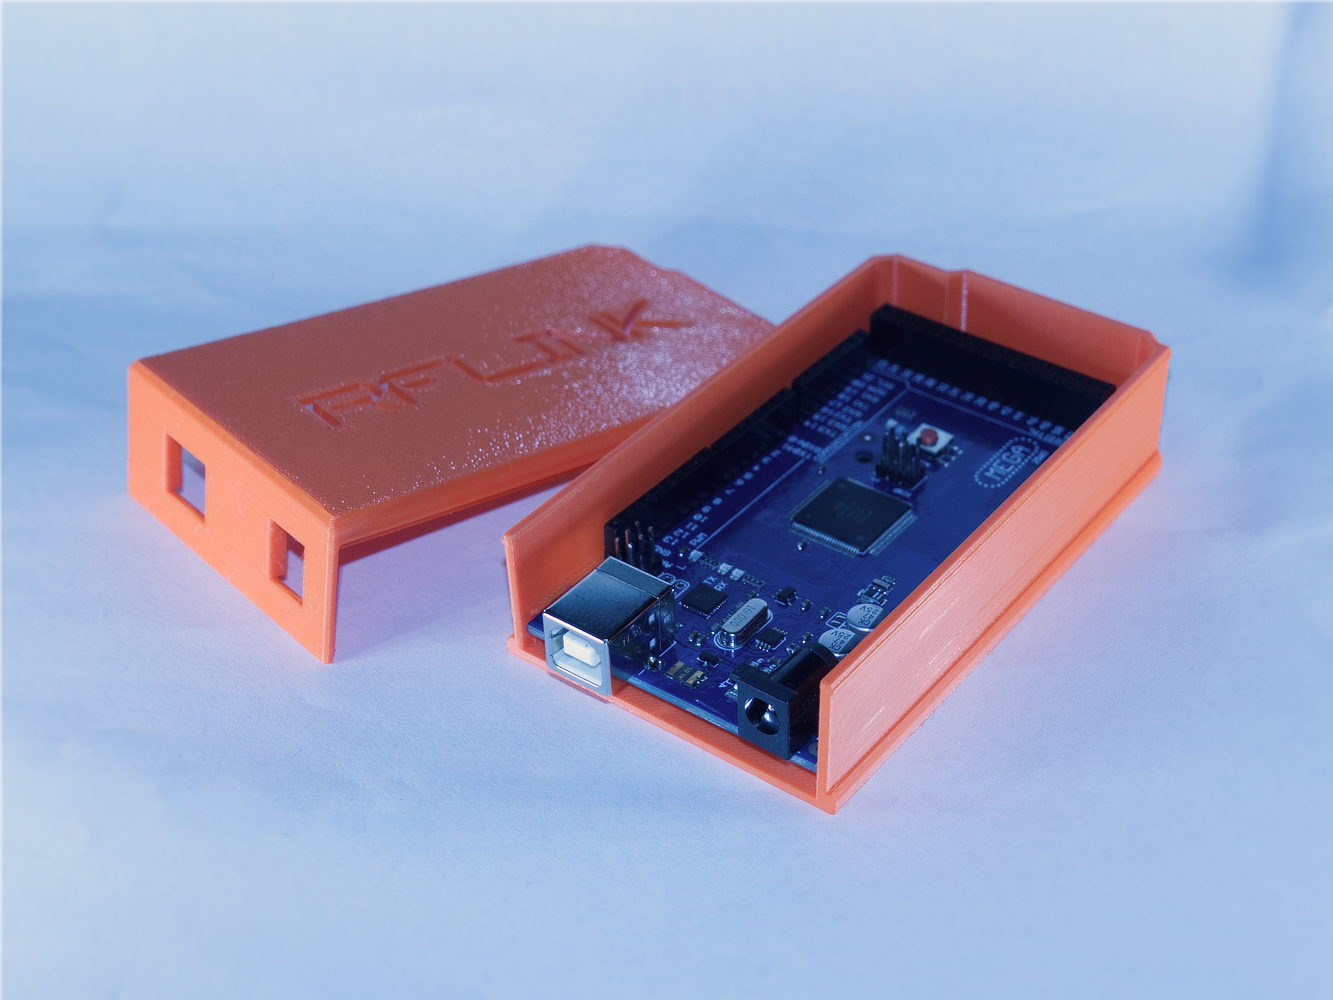 Arduino Mega 2560 Rev3 slide case (RFLink)